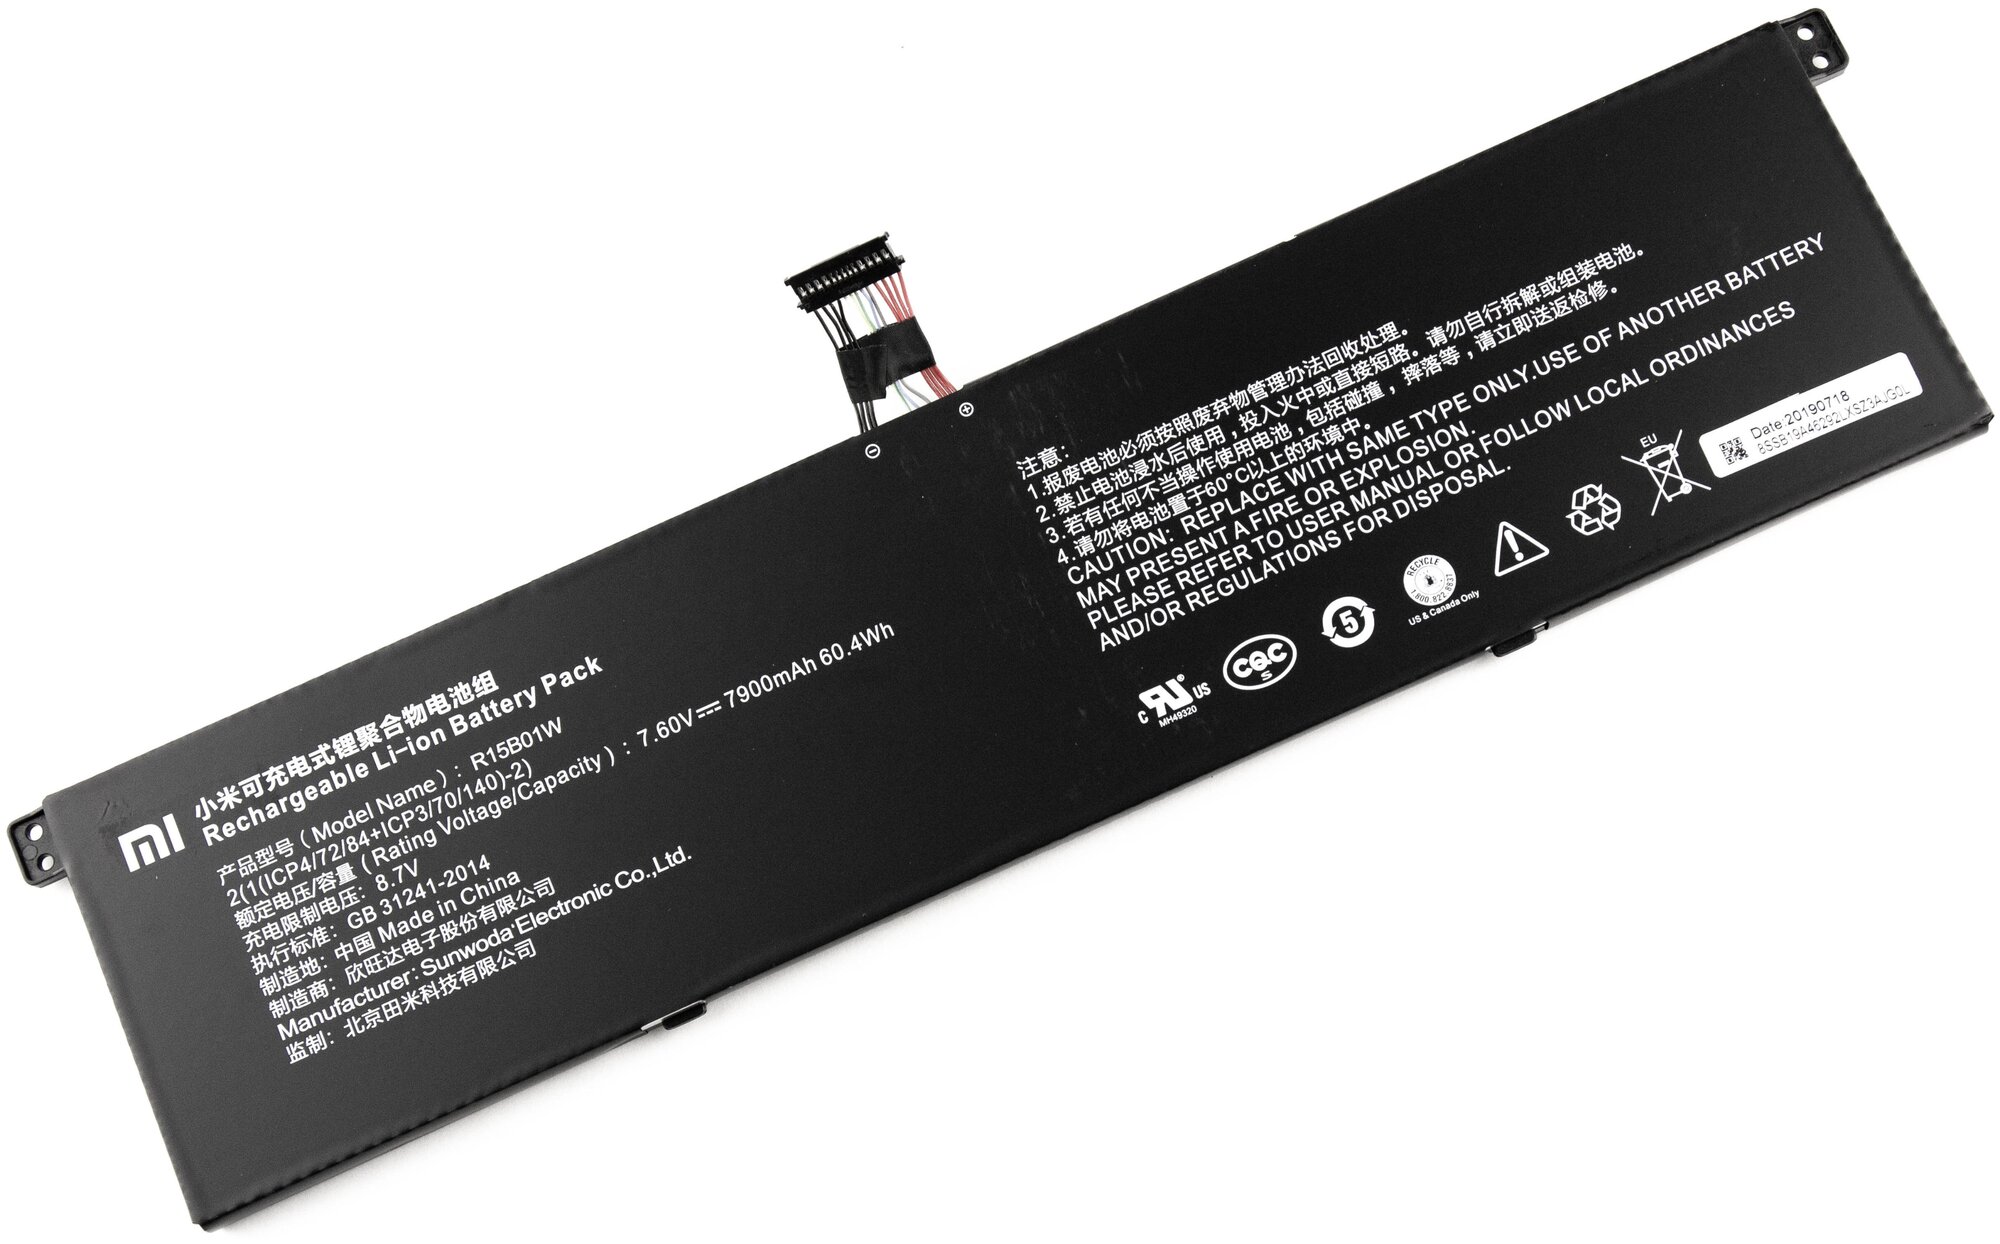 Аккумулятор для Xiaomi Mi Air 15.6 (7.60V 7900mAh) p/n: R15B01W